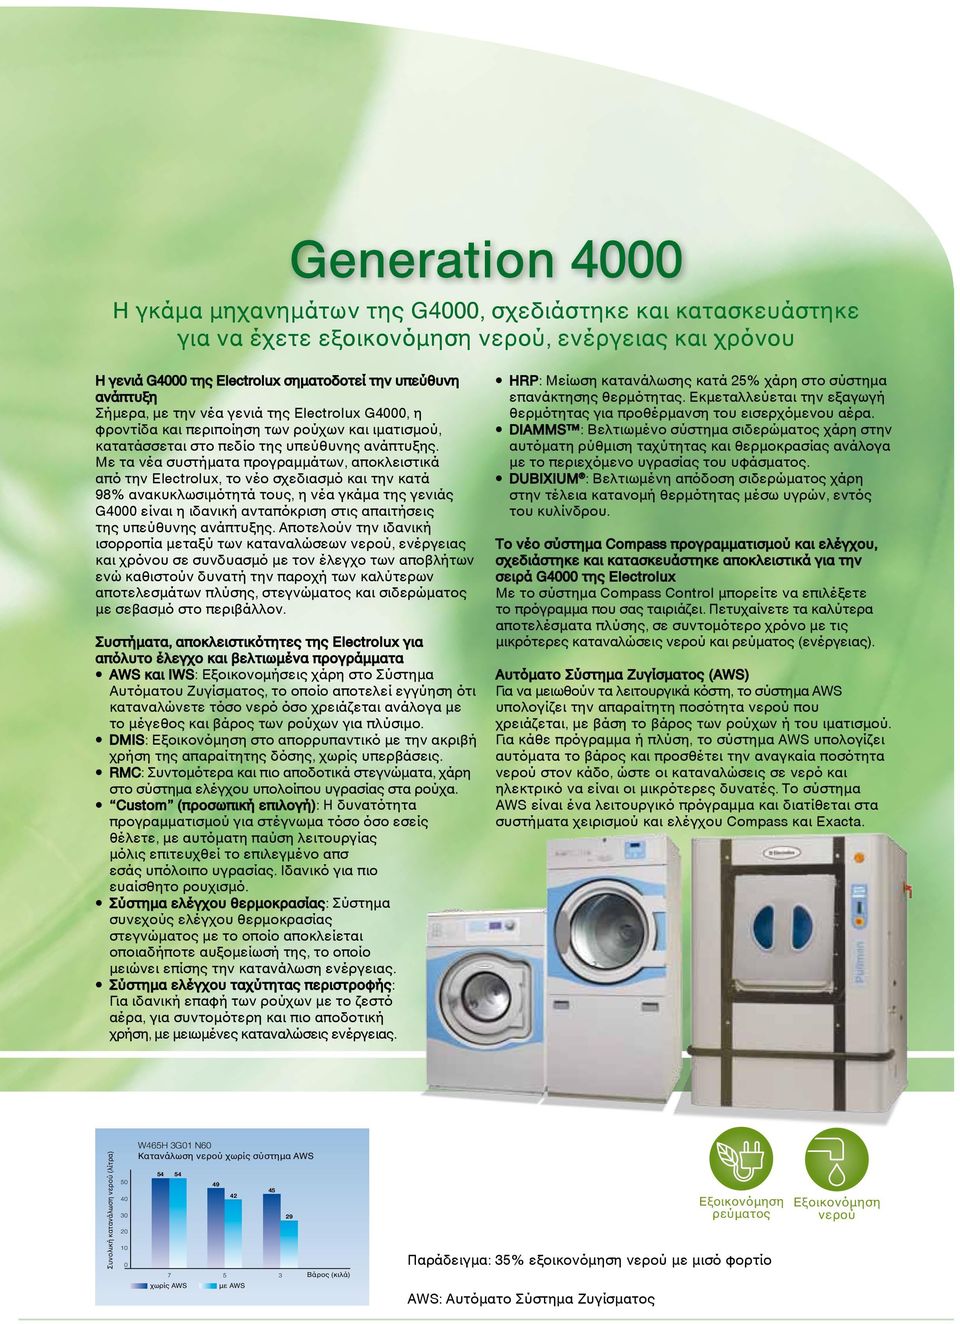 Με τα νέα συστήματα προγραμμάτων, αποκλειστικά από την Electrolux, το νέο σχεδιασμό και την κατά 98% ανακυκλωσιμότητά τους, η νέα γκάμα της γενιάς G4000 είναι η ιδανική ανταπόκριση στις απαιτήσεις